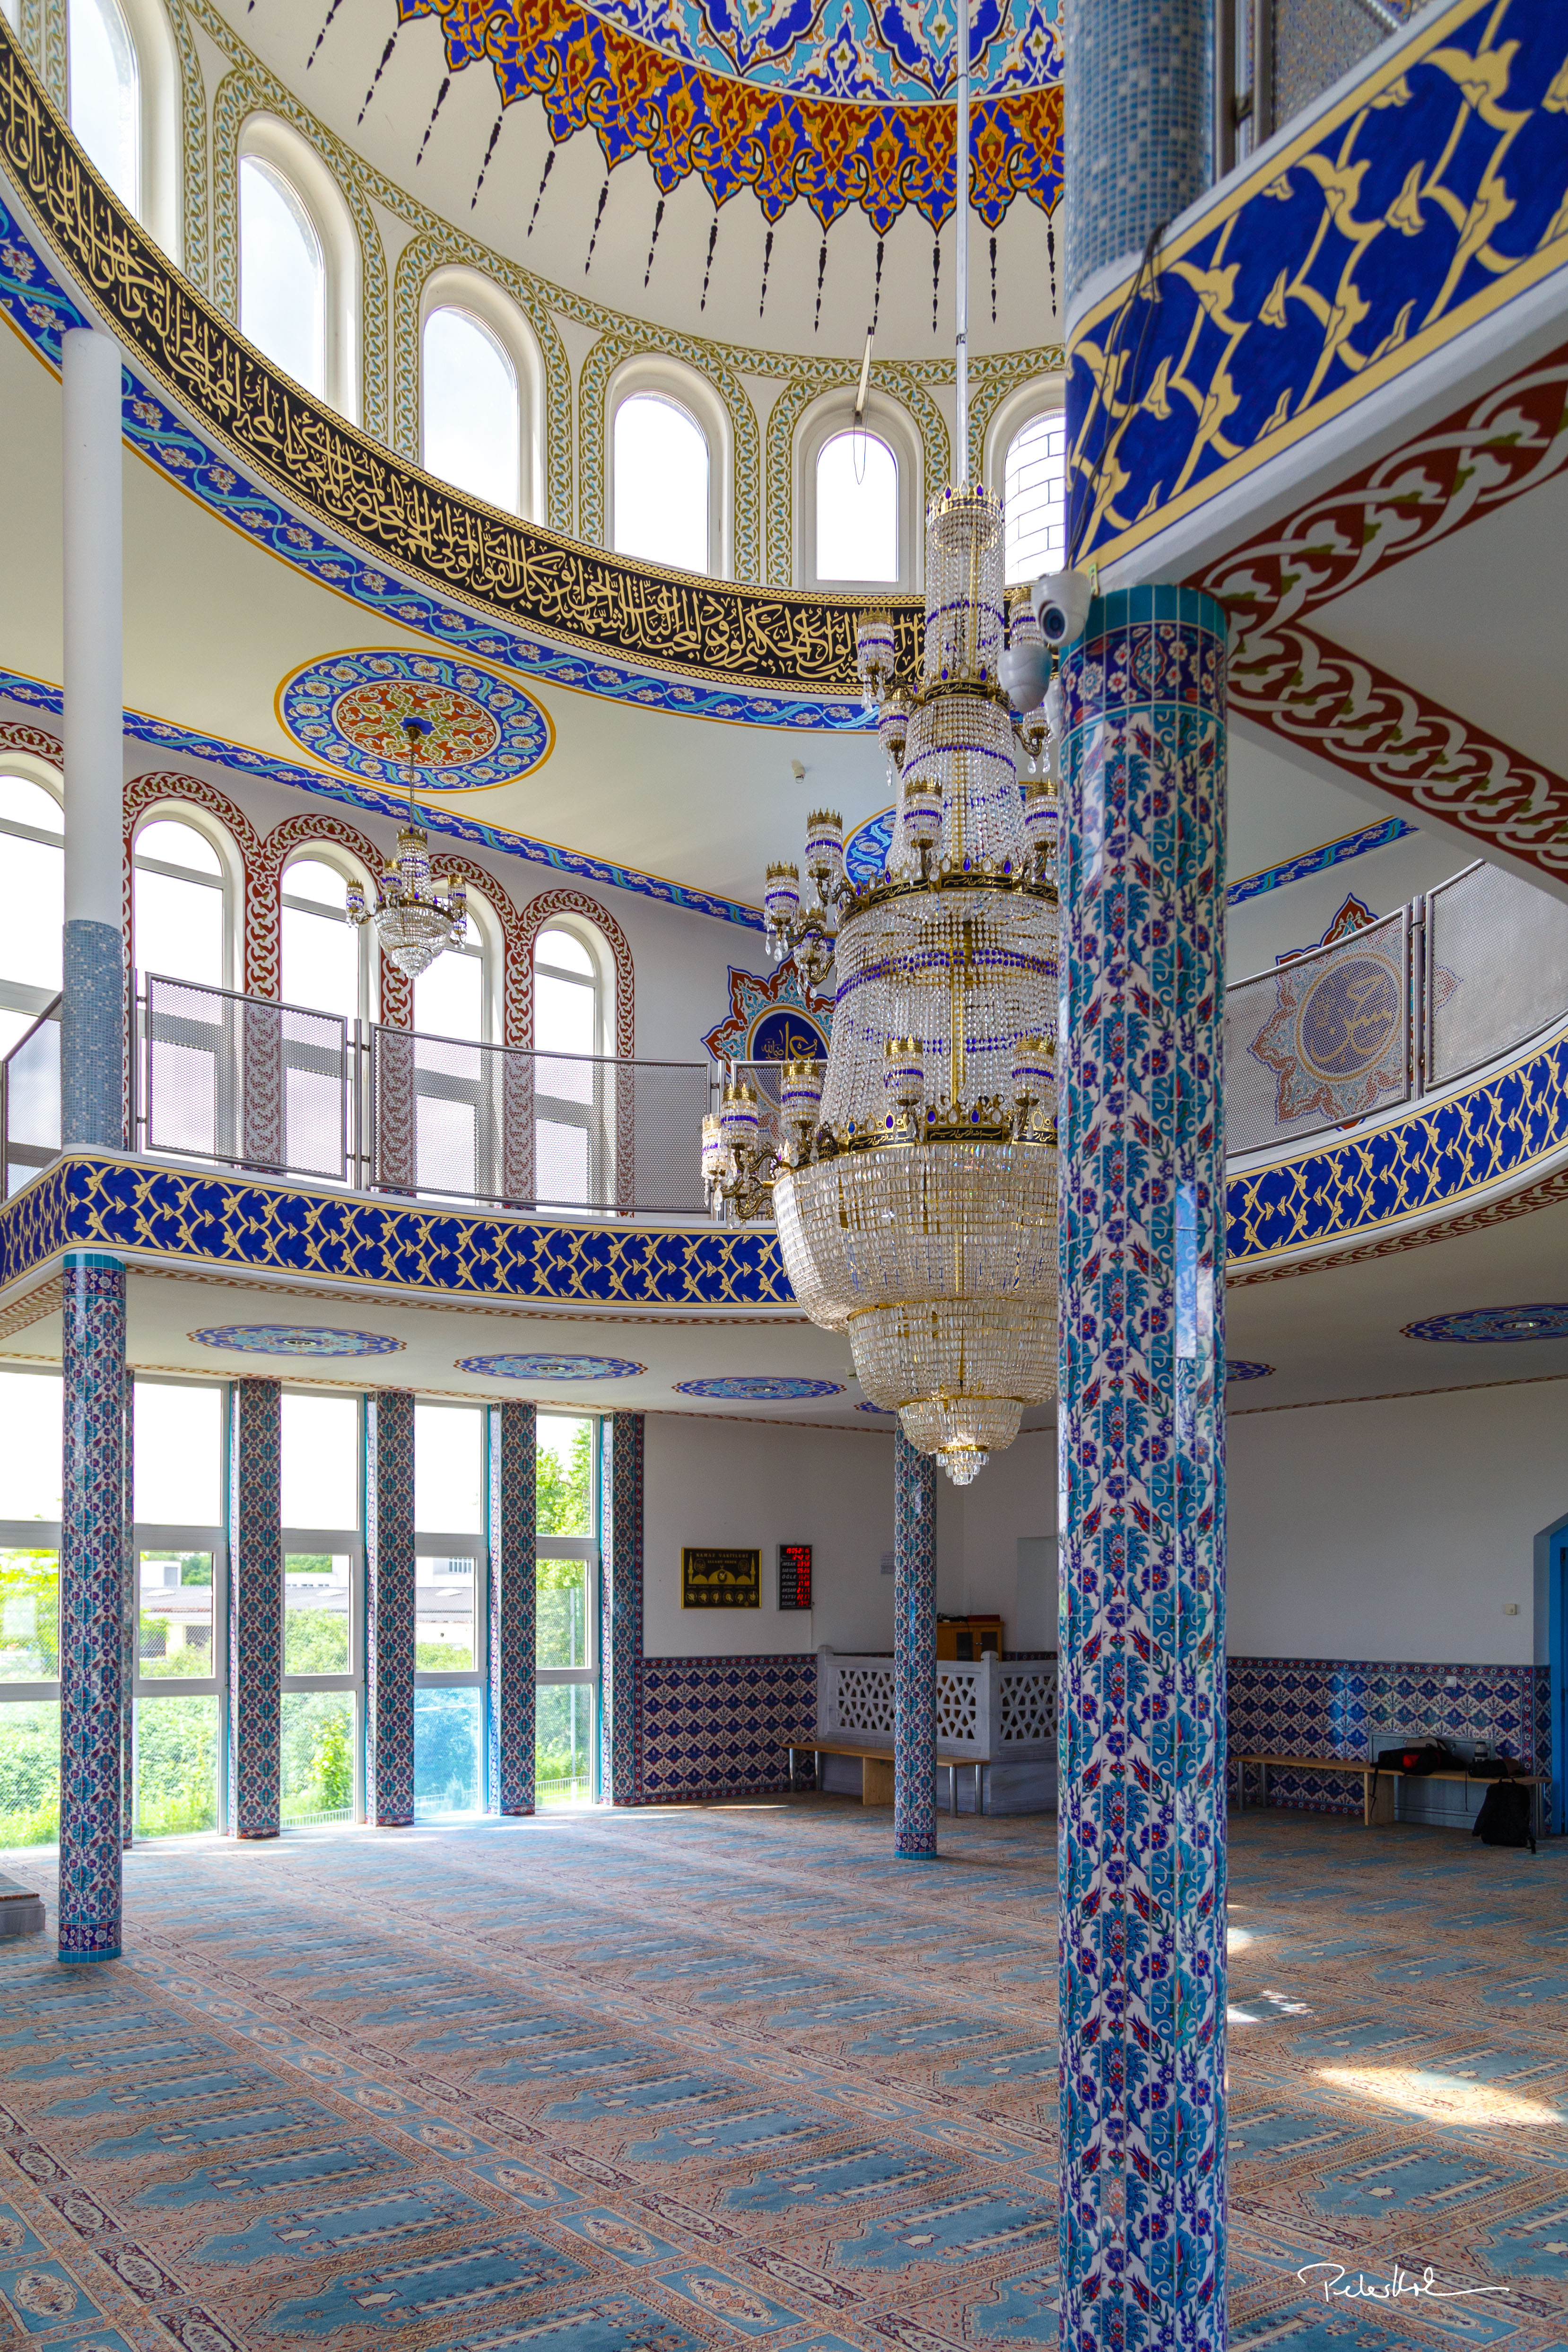 Foto des Gebetsraums für Männer in der Emir Sultan Moschee, Darmstadt. An den Wänden befinden sich bunte, verzierte Fliesen, auf dem Boden ist ein ebenso detailierter Teppich und in der Mitte des Raums hängt ein riesiger Kronleuchter mit goldenem Gestell, behangen mit einer Vielzahl an Kristallglas